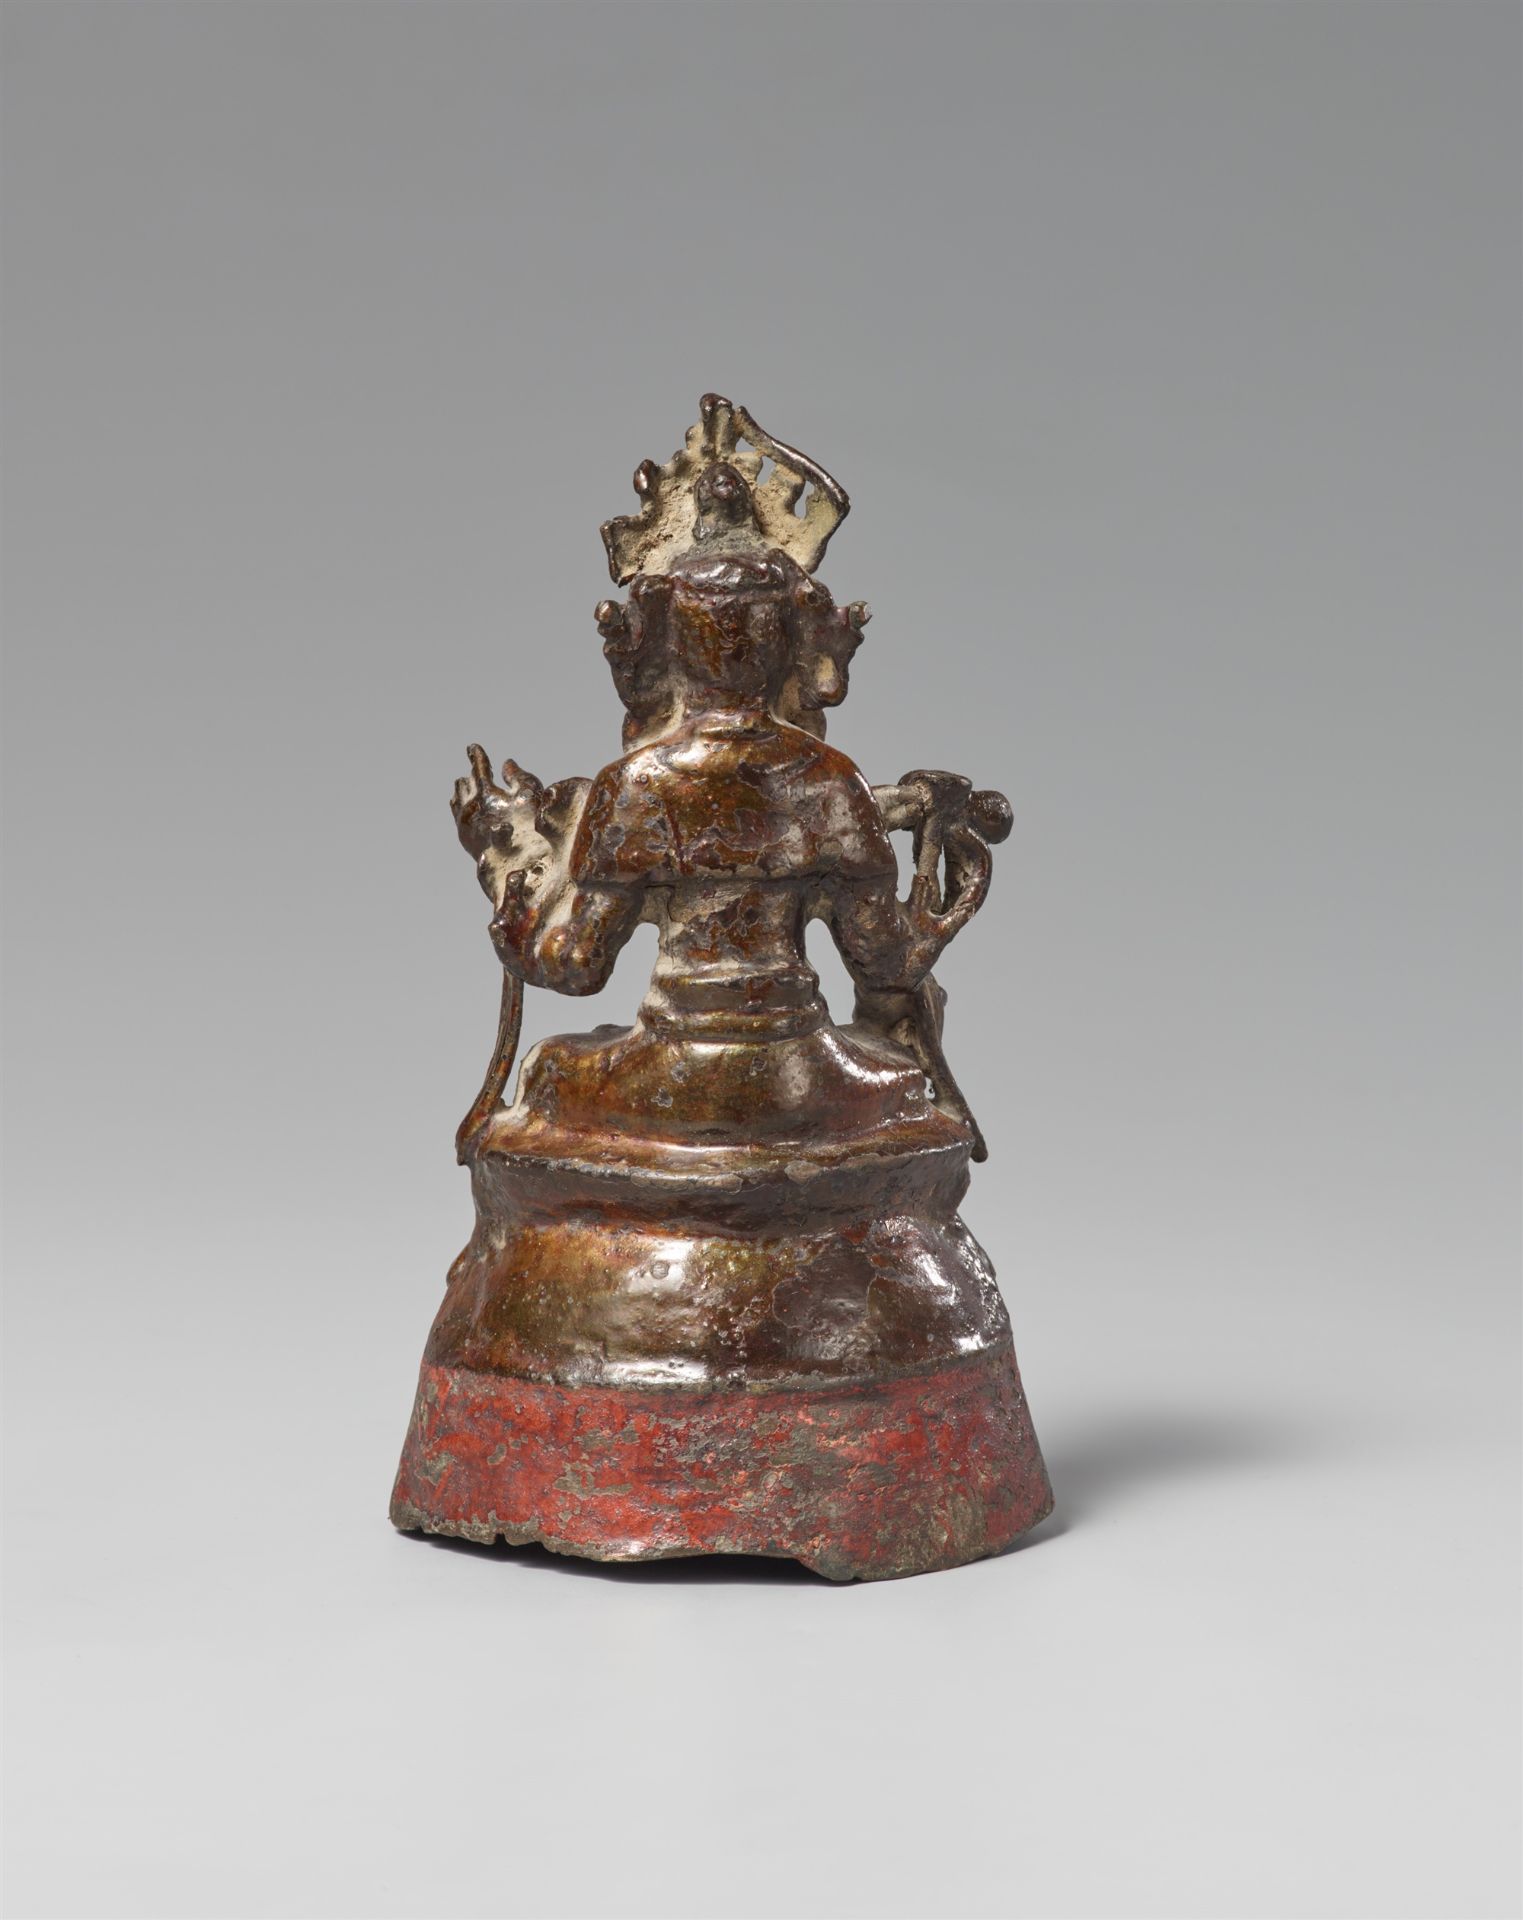 Figur des Guanyin. Bronze. Späte Ming-Zeit, 16./17. Jh. - Bild 2 aus 2